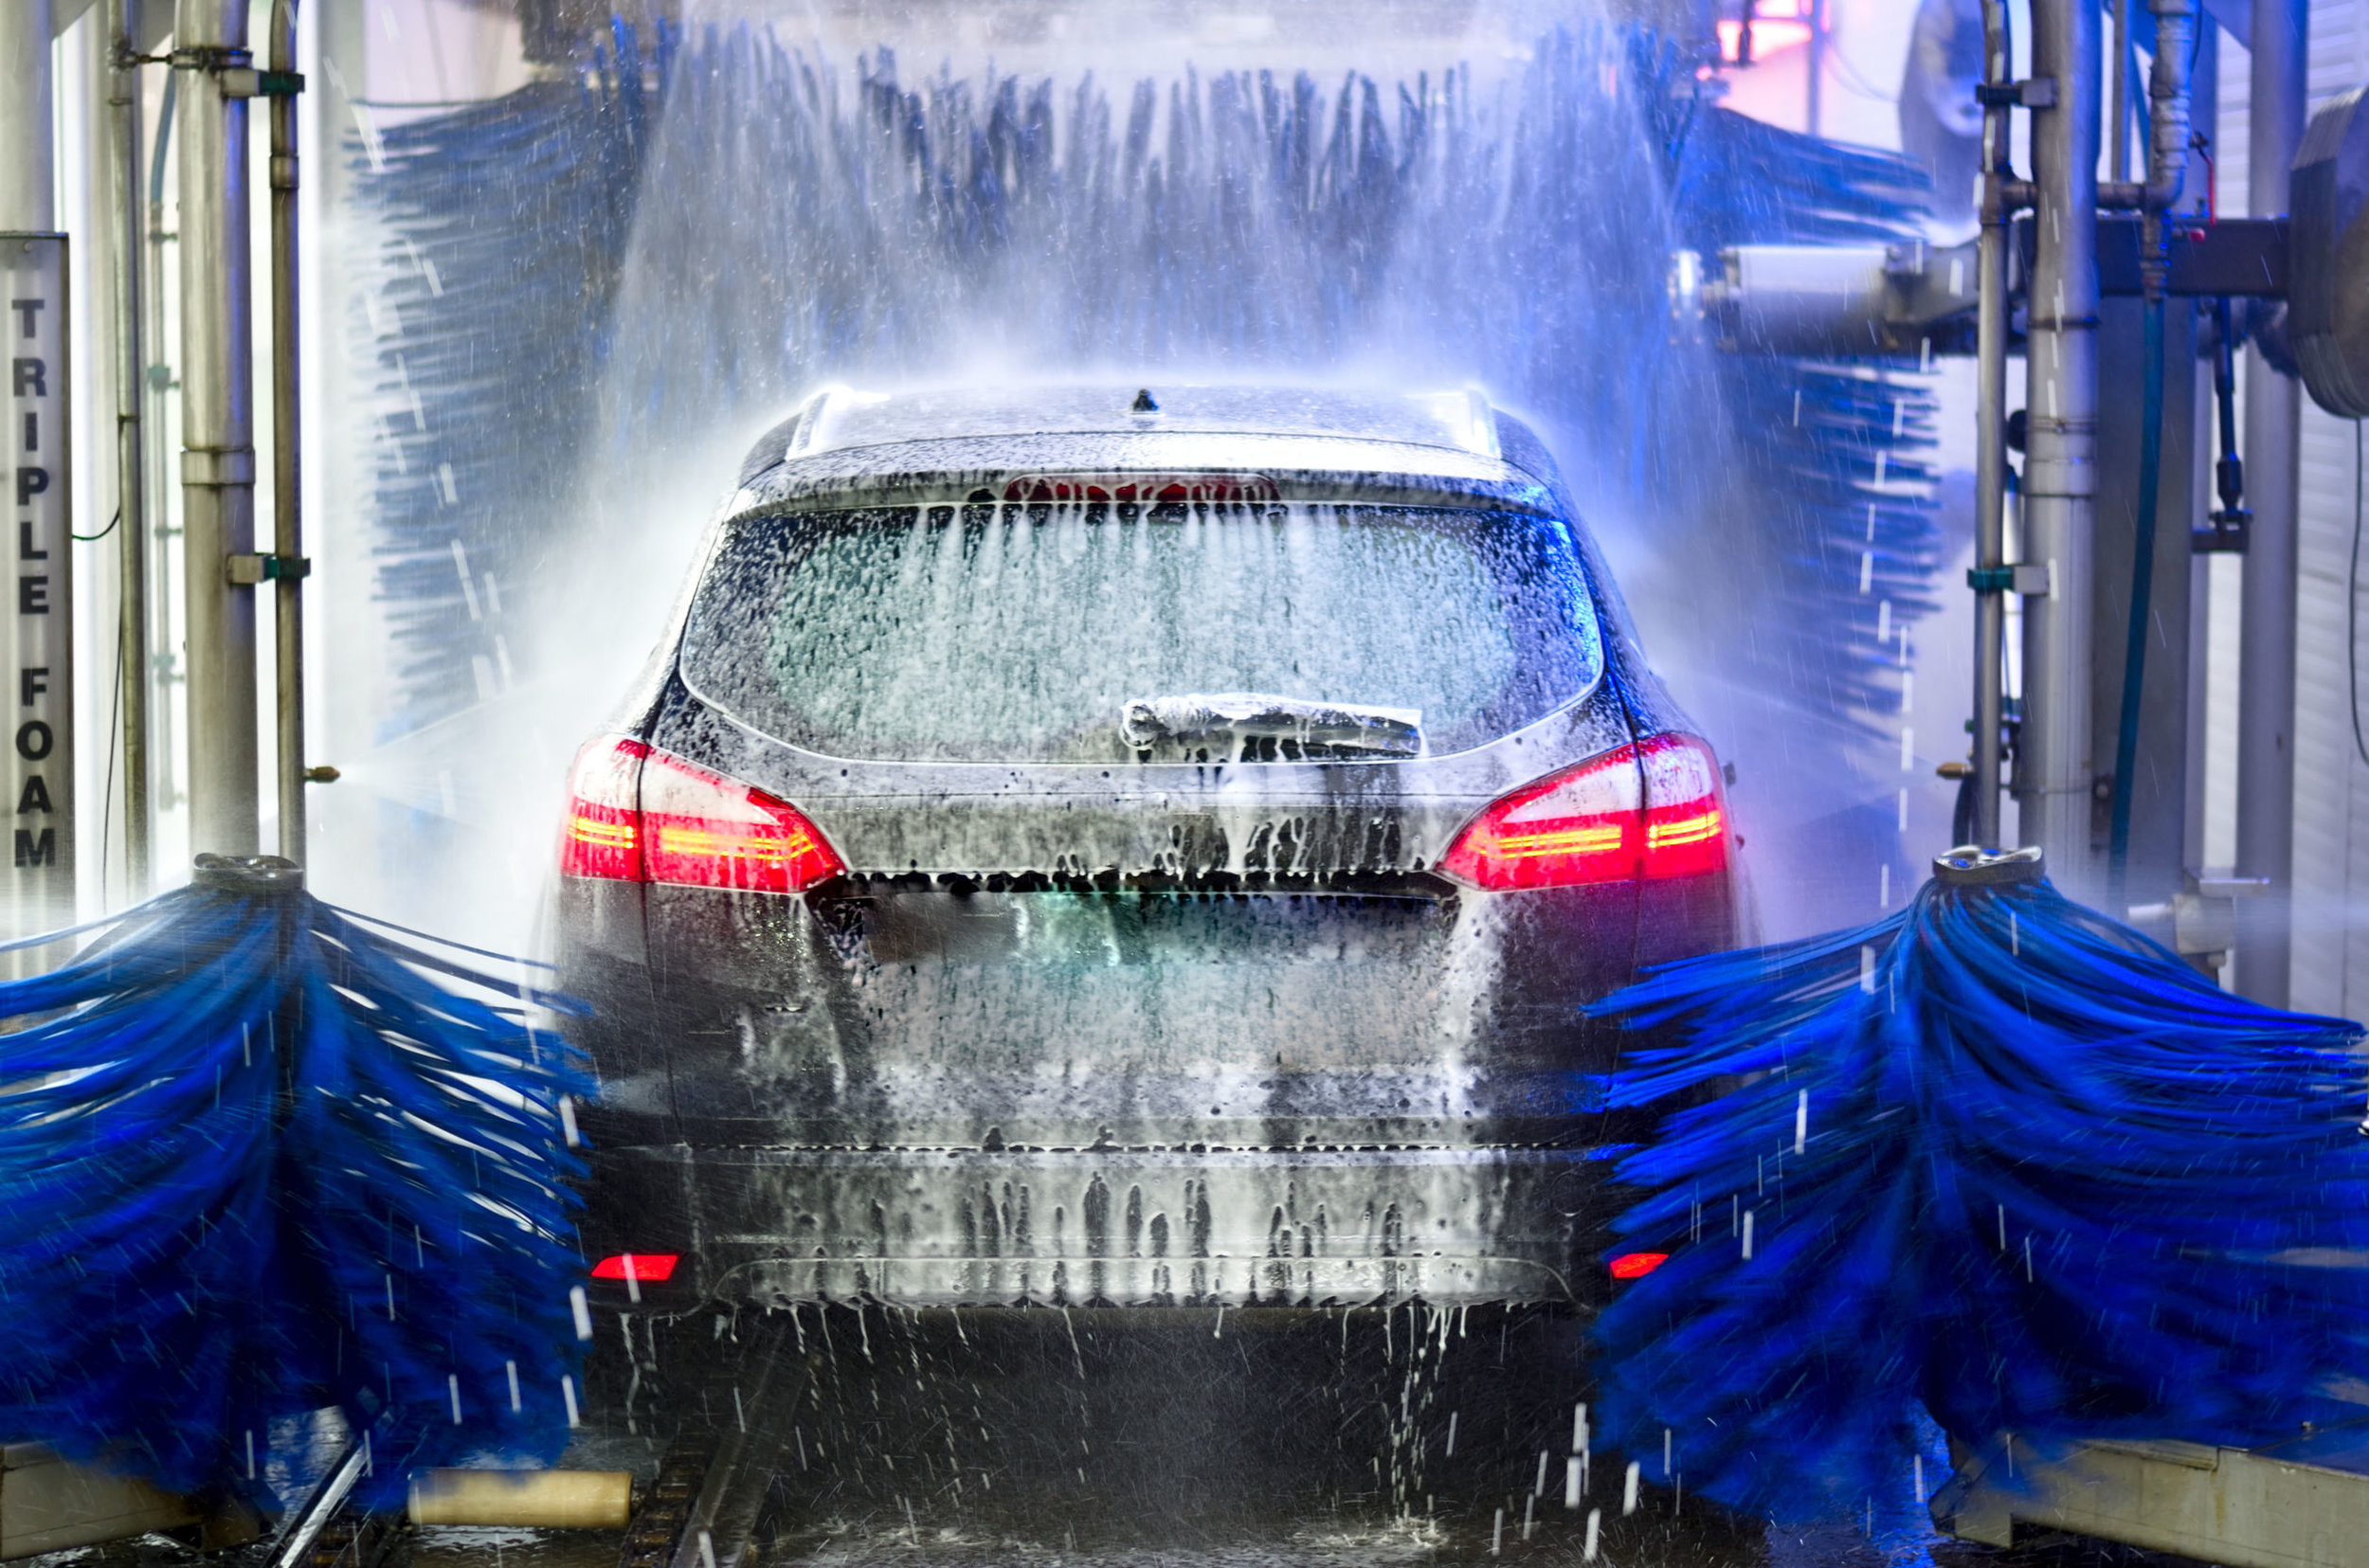 car-in-wash.jpg